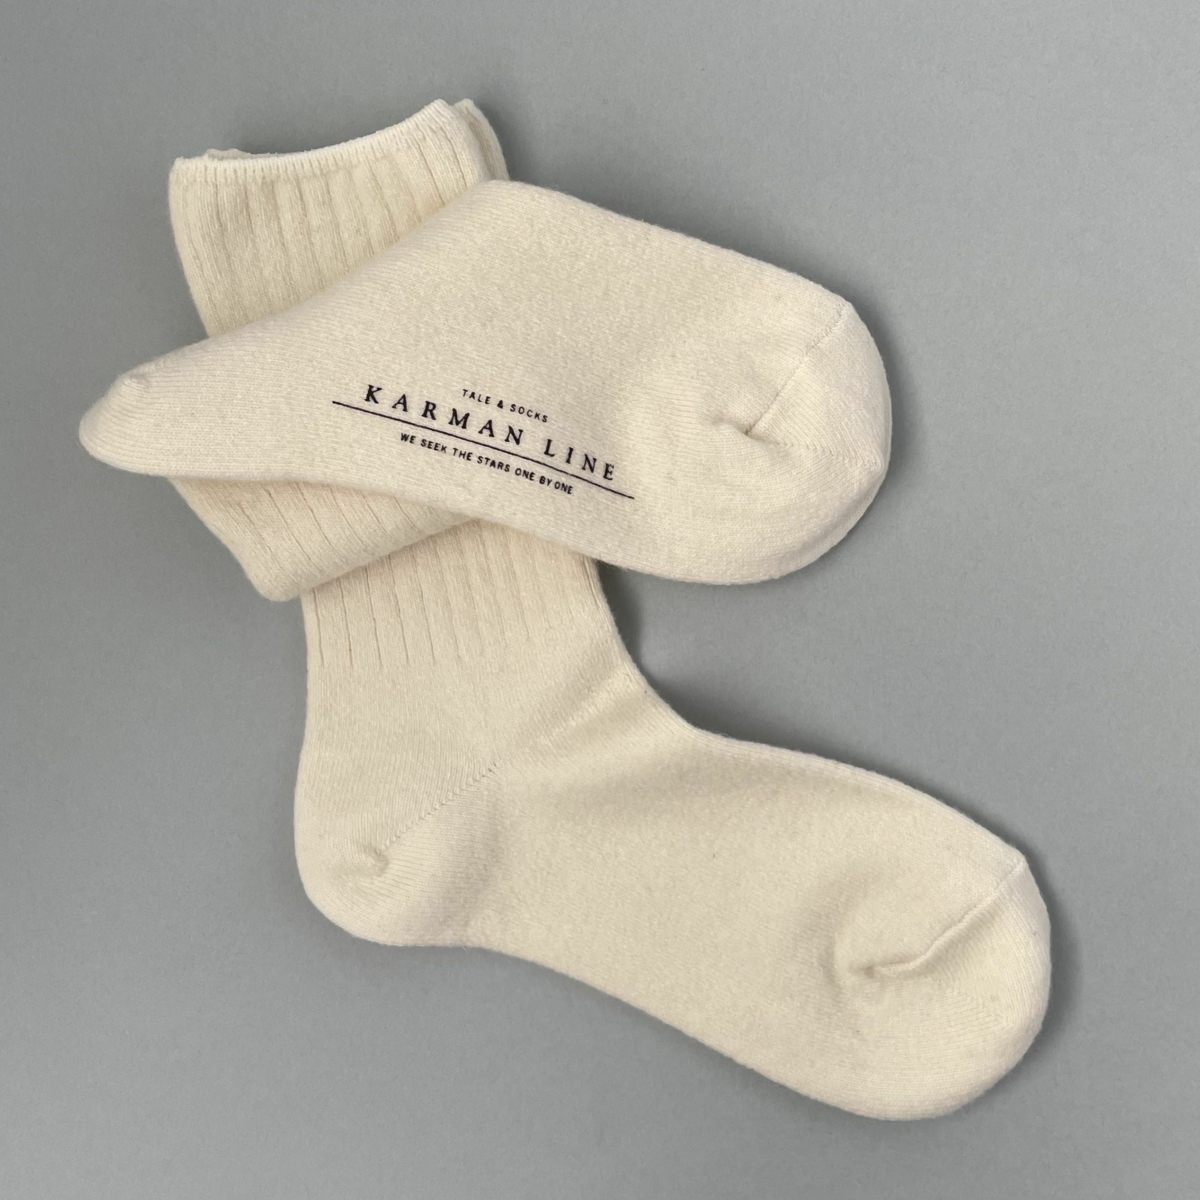 KARMAN LINE TAURUS / Socks / White / 23-25cm